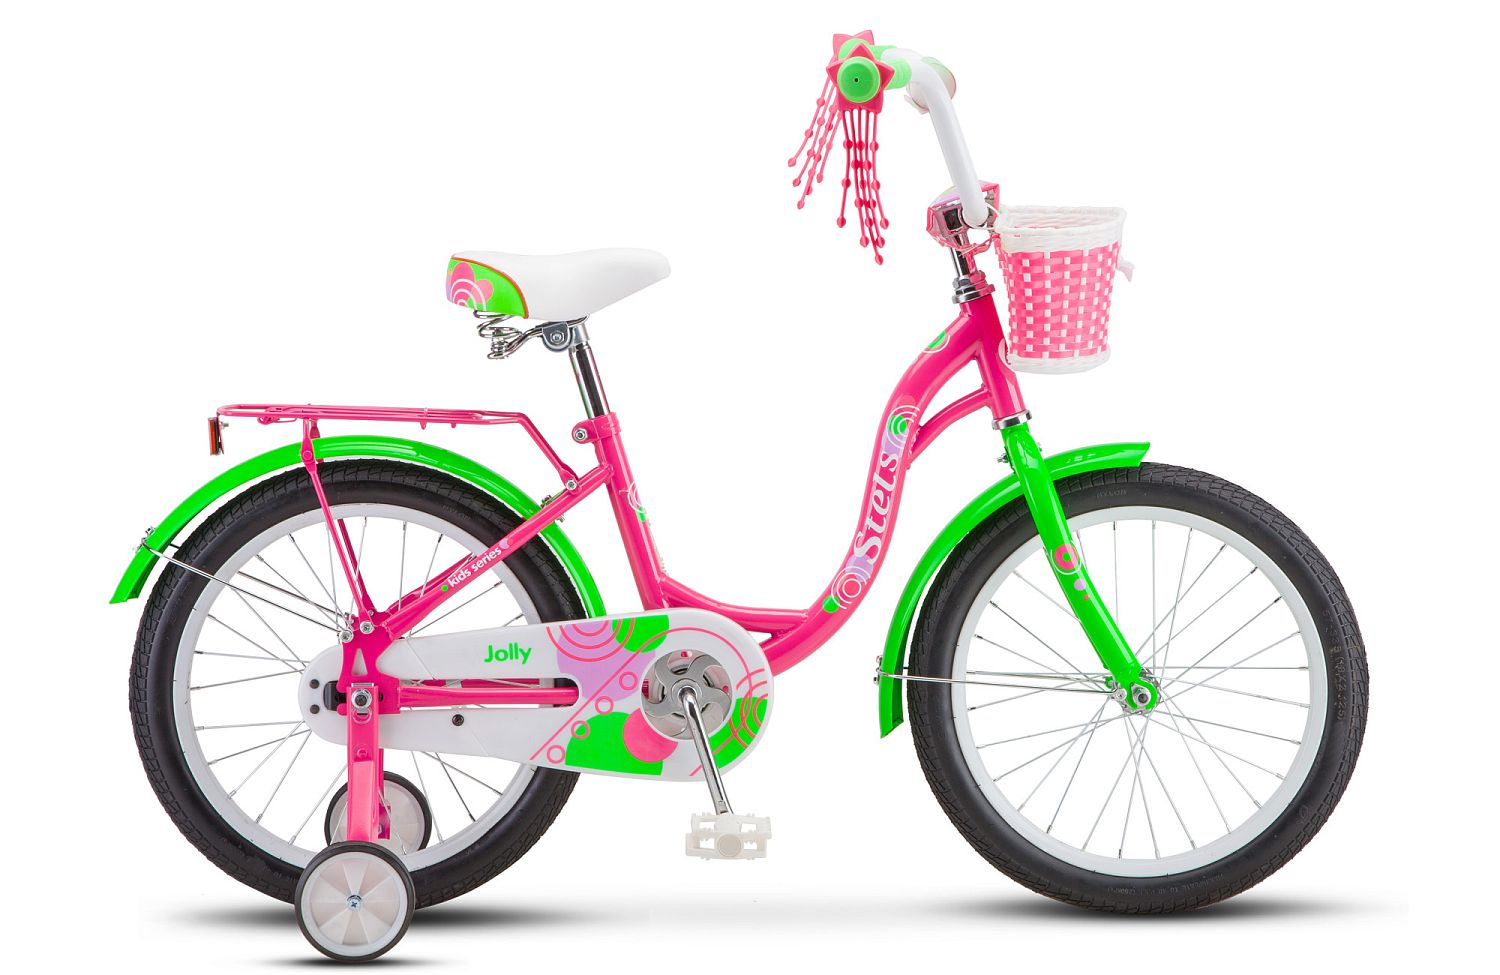 Велосипед 18" Stels Jolly V010 Пурпурный/зеленый, LU084749